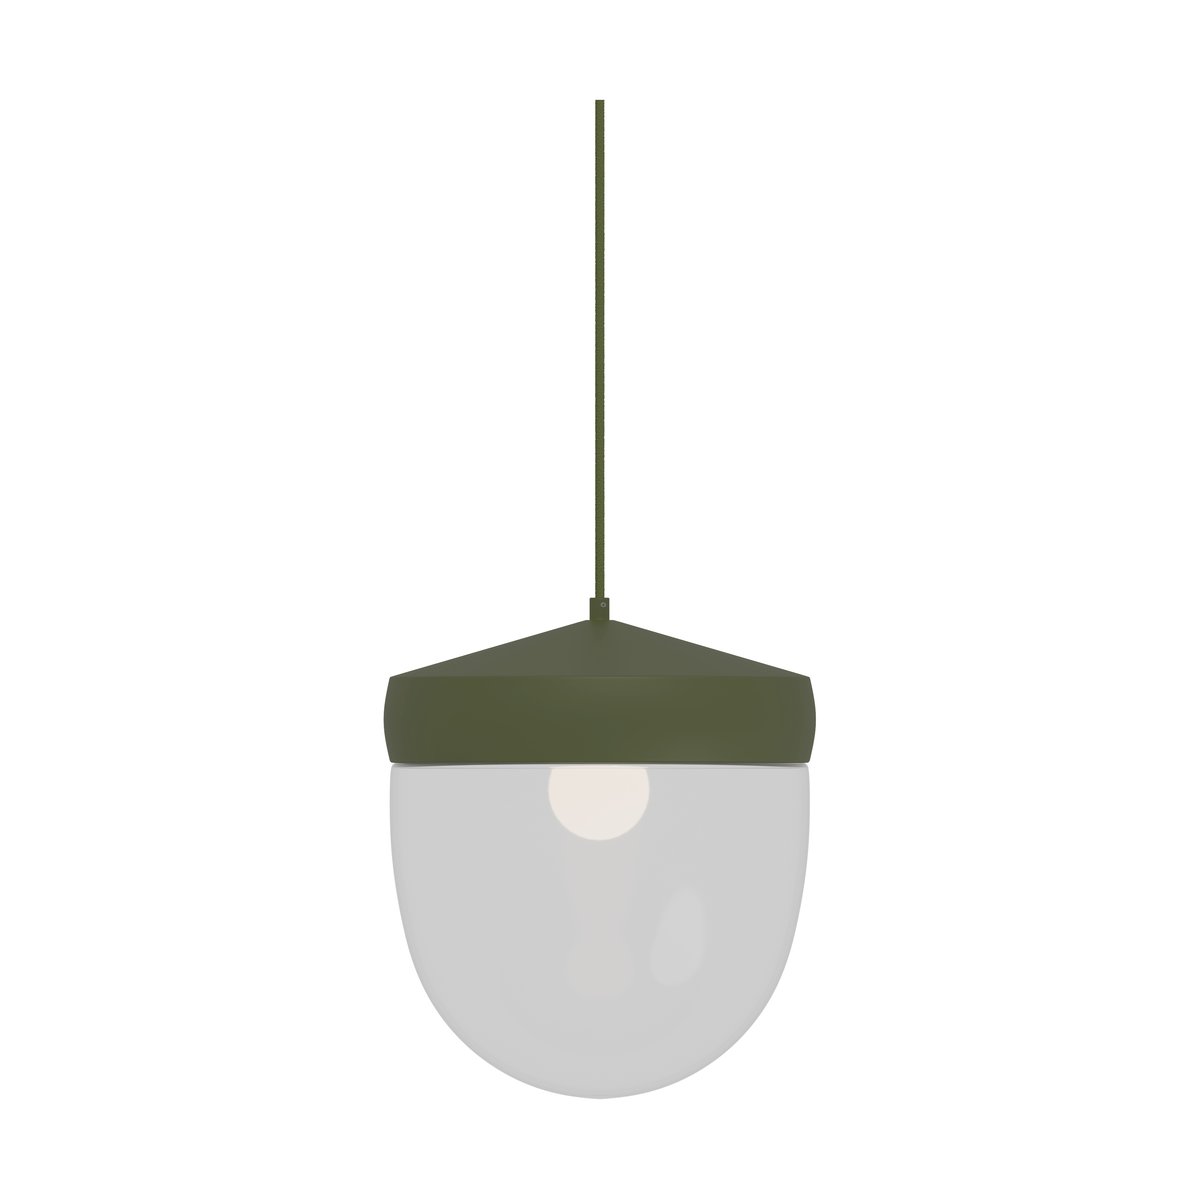 Noon Pan hanglamp helder 30 cm Militairgroen-groen